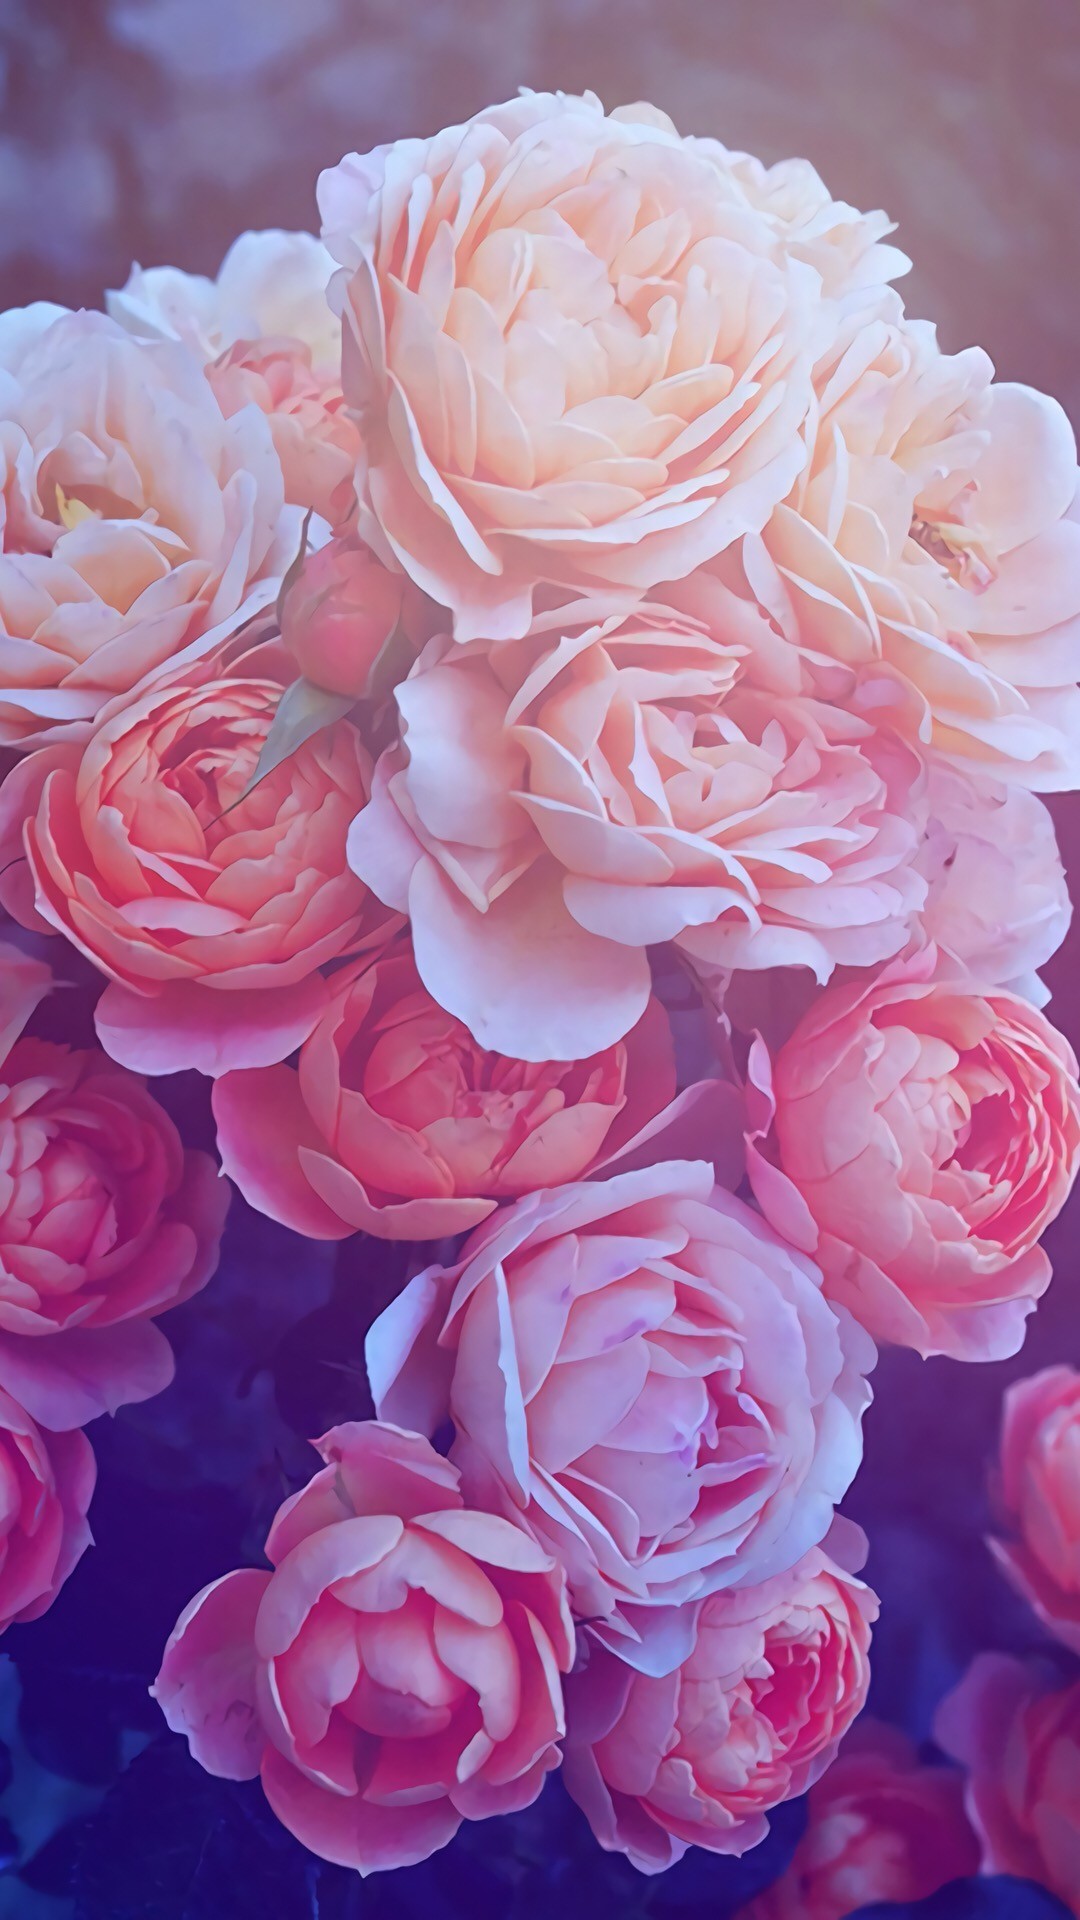 pretty rose wallpapers,flower,garden roses,flowering plant,julia child rose,rose